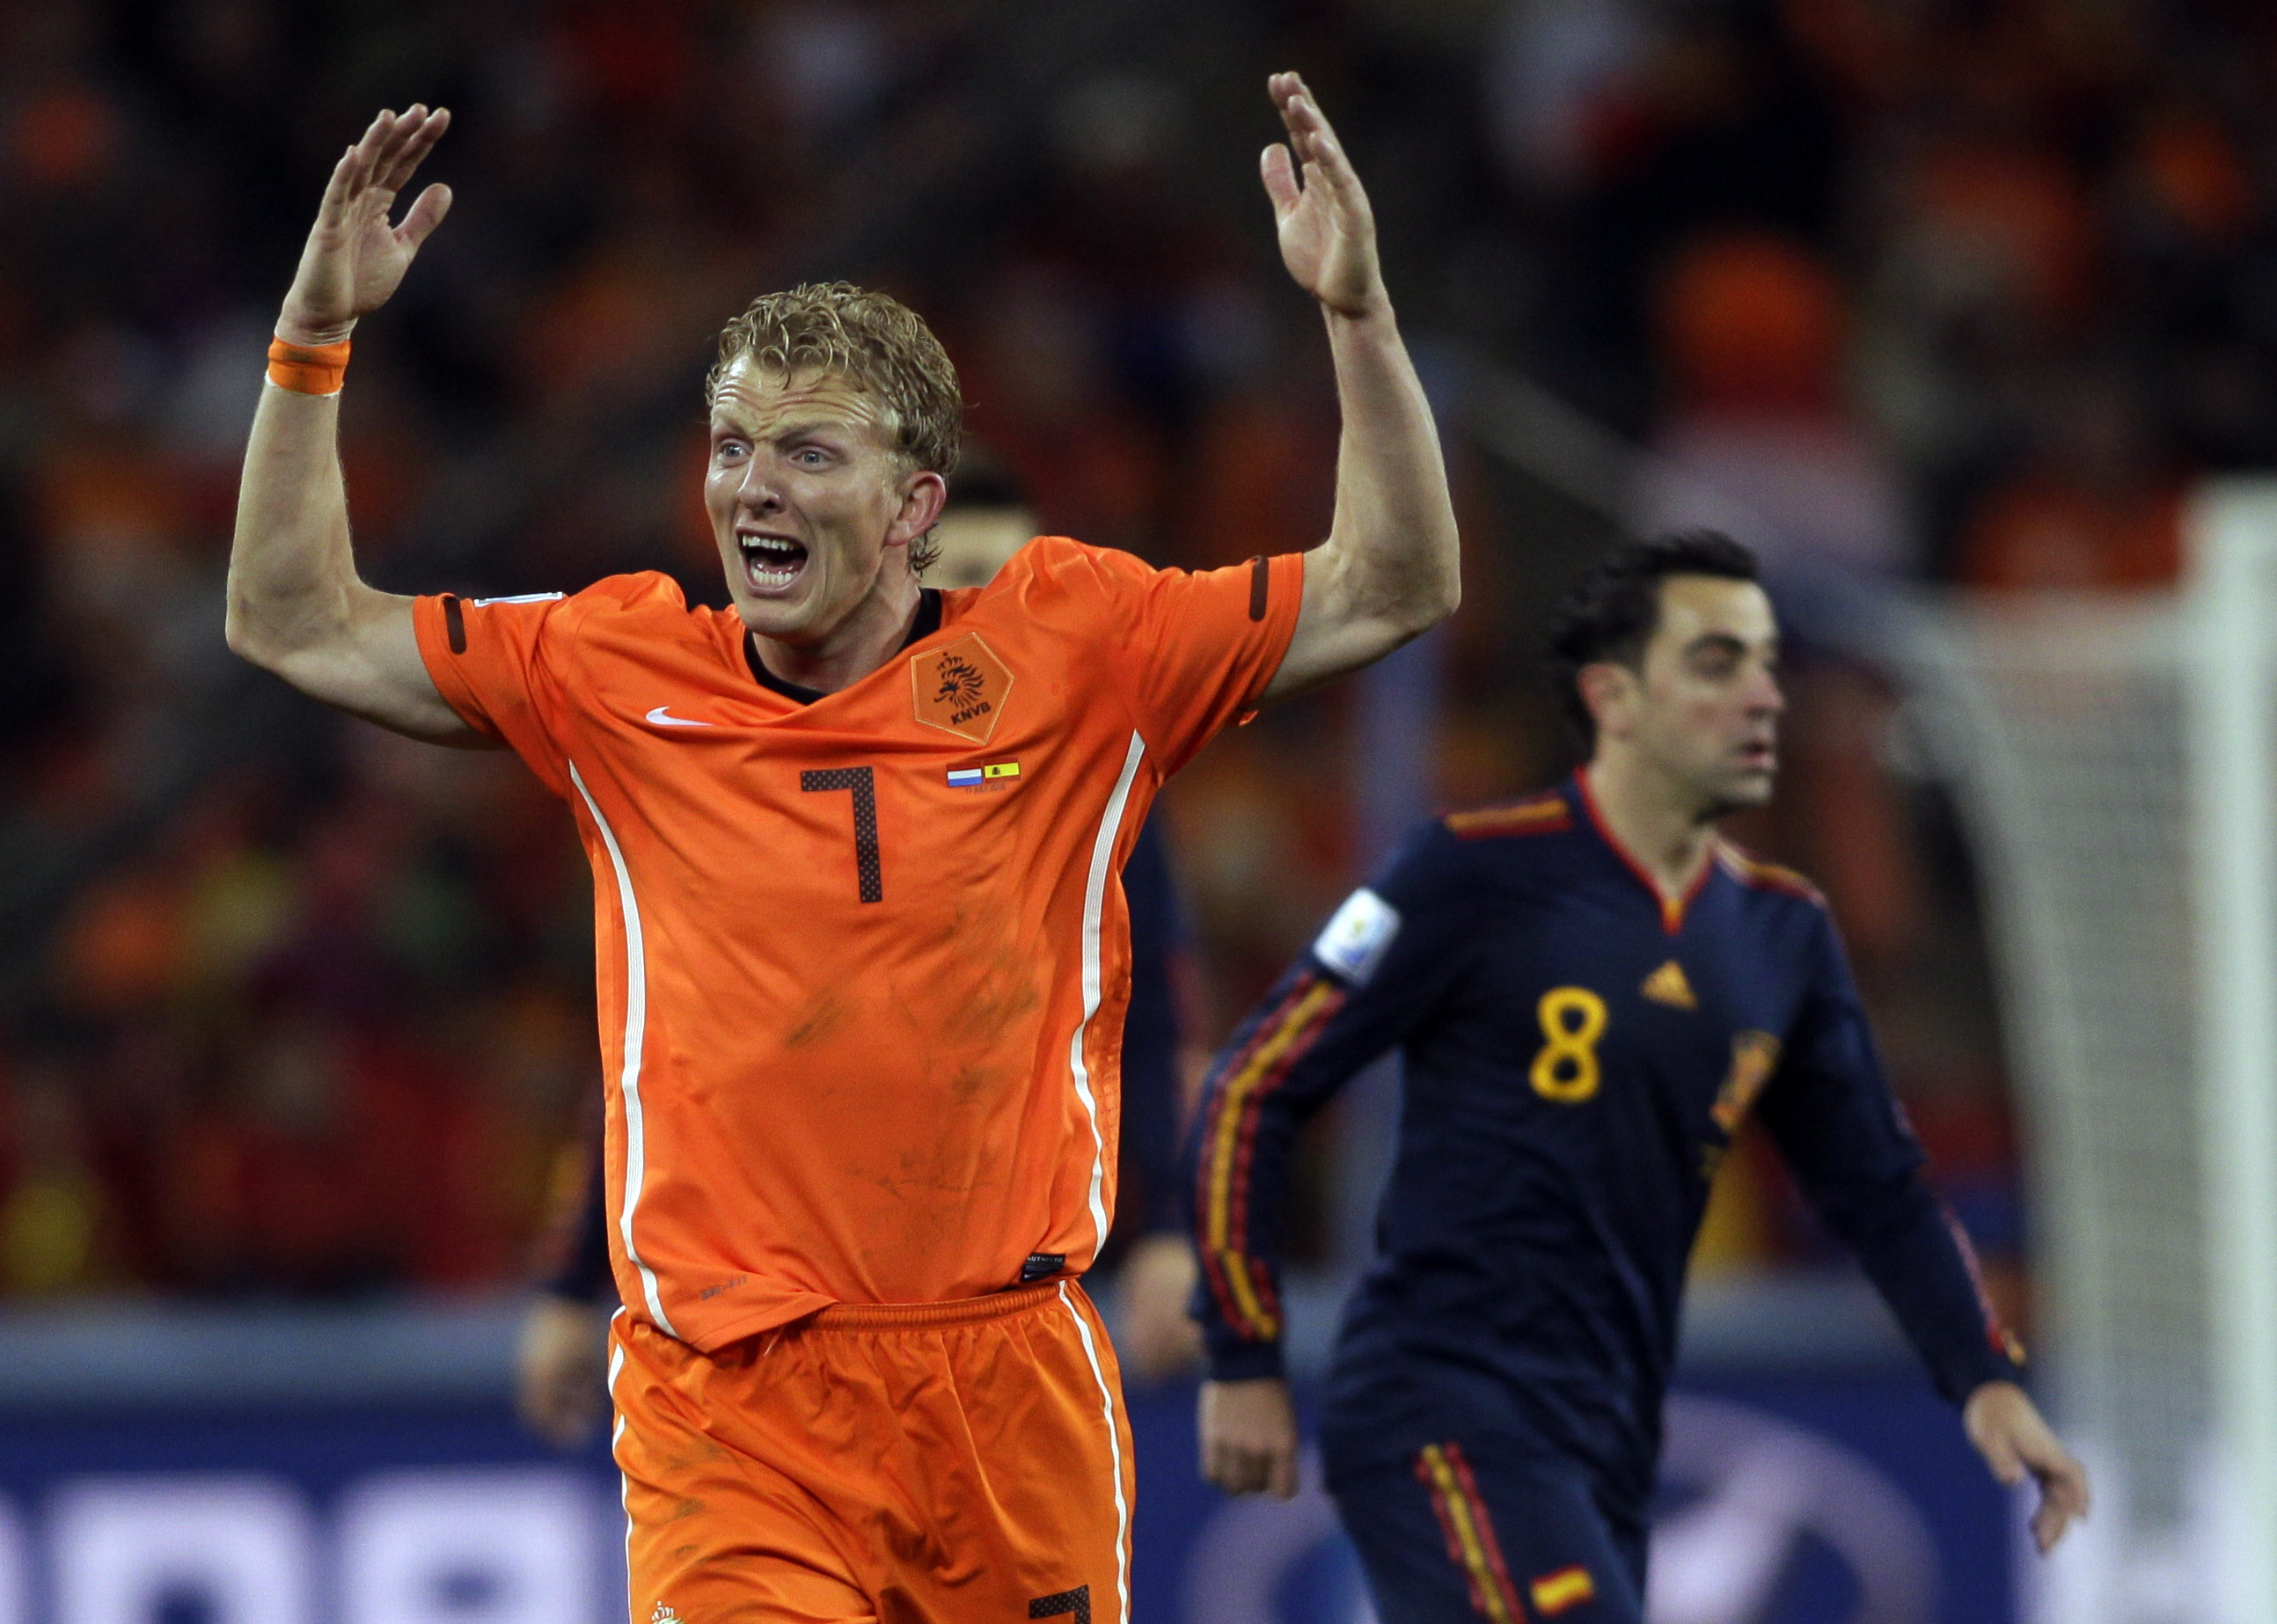 VM-final, Dirk Kuyt, Holland